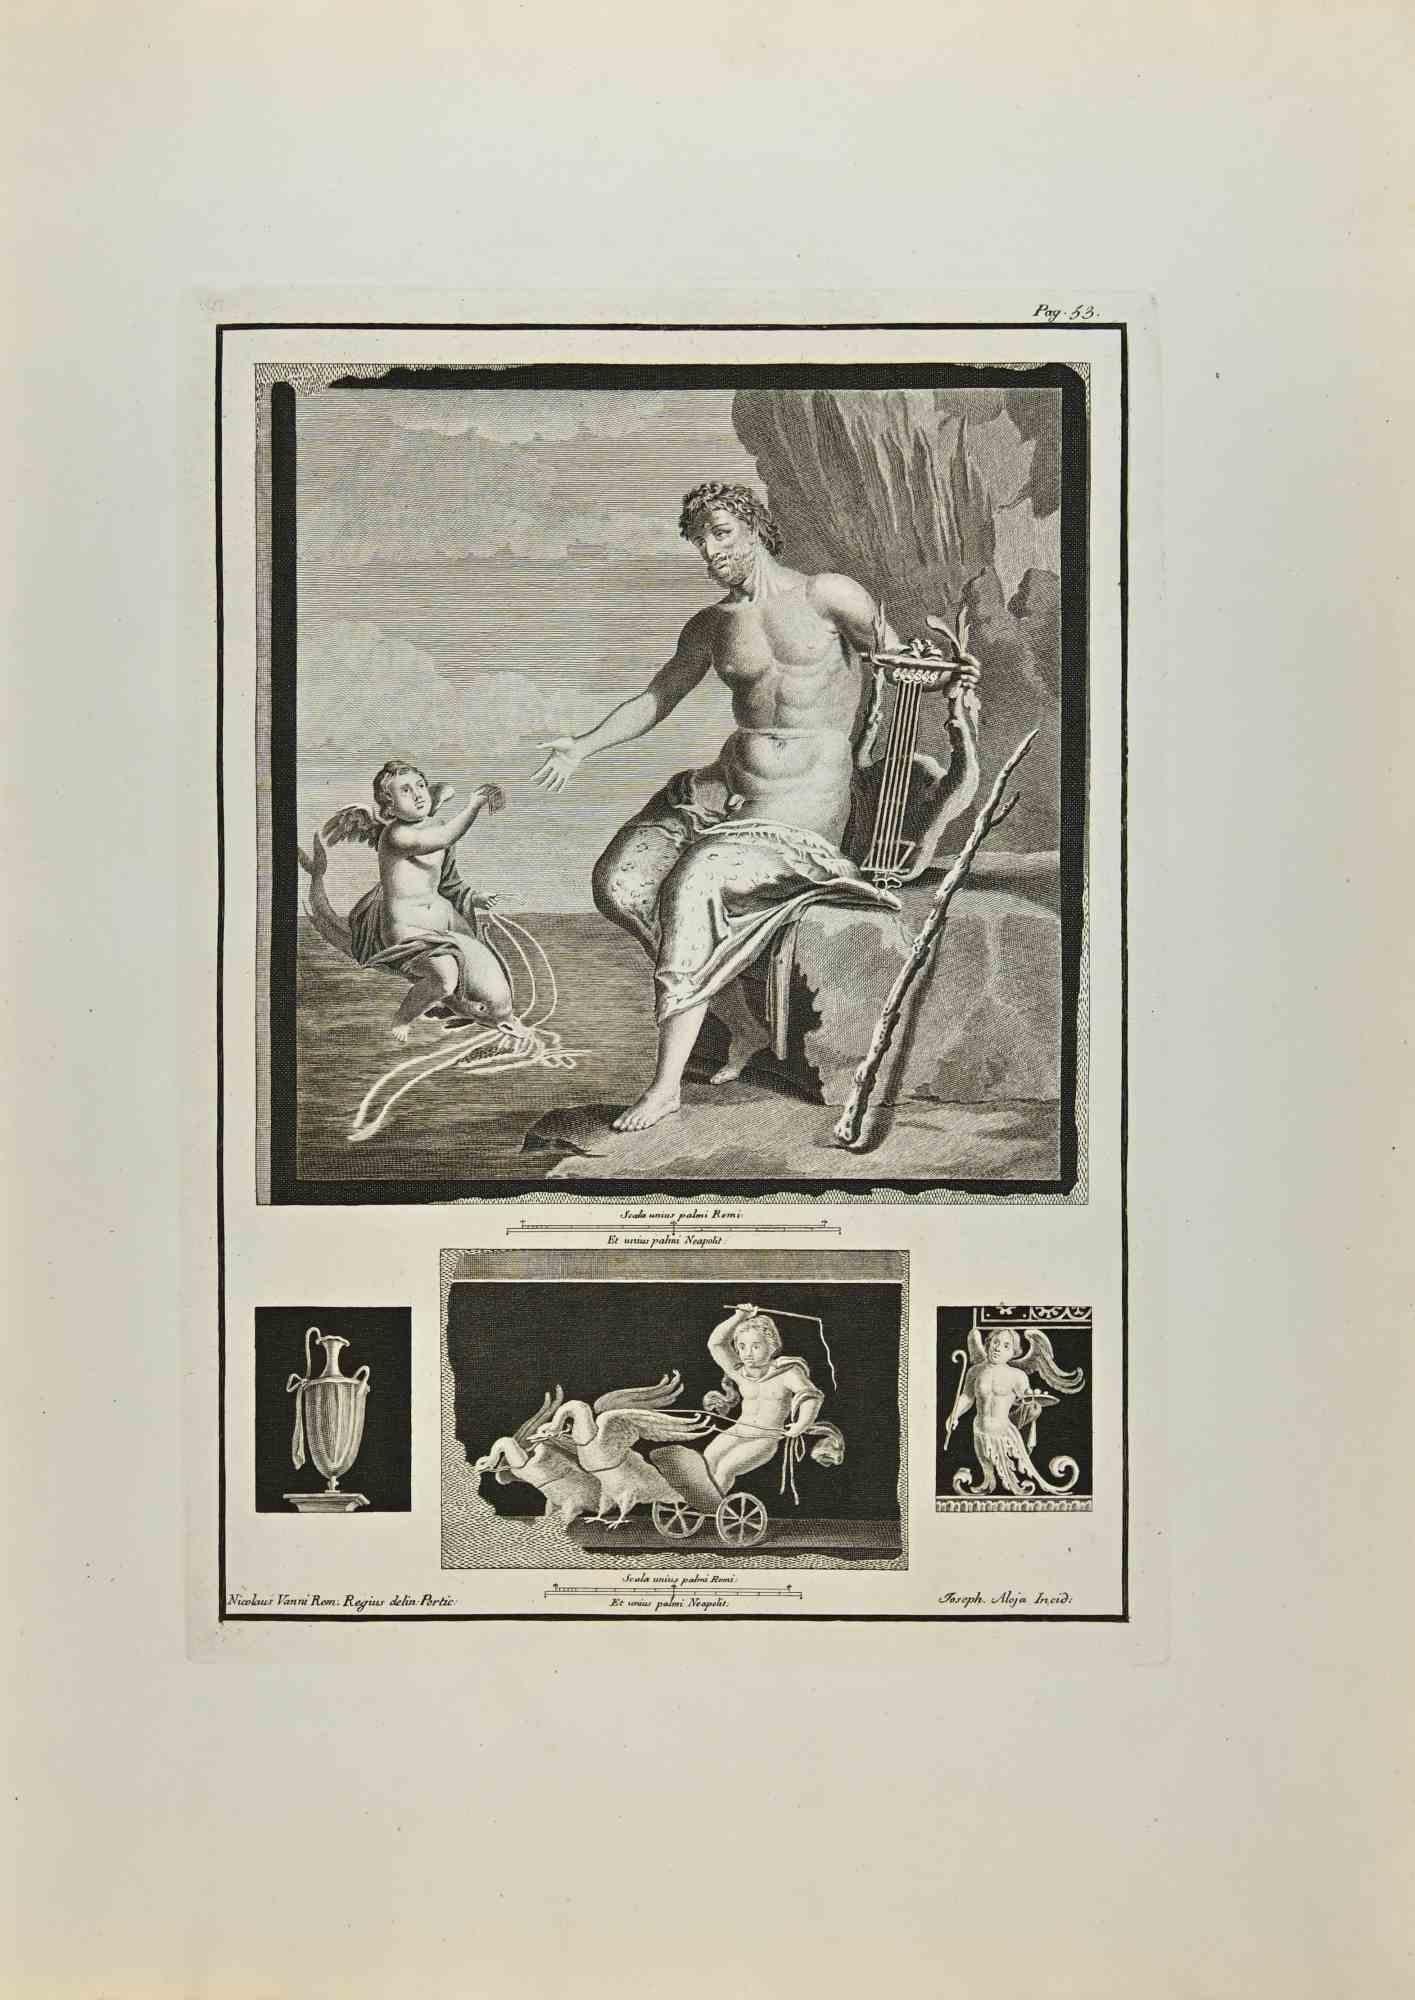 Héraclès et Cupidon des "Antiquités d'Herculanum" est une gravure sur papier réalisée par Giuseppe Aloja au 18ème siècle.

Signé sur la plaque.

Bon état avec quelques pliures.

La gravure appartient à la suite d'estampes "Antiquités d'Herculanum